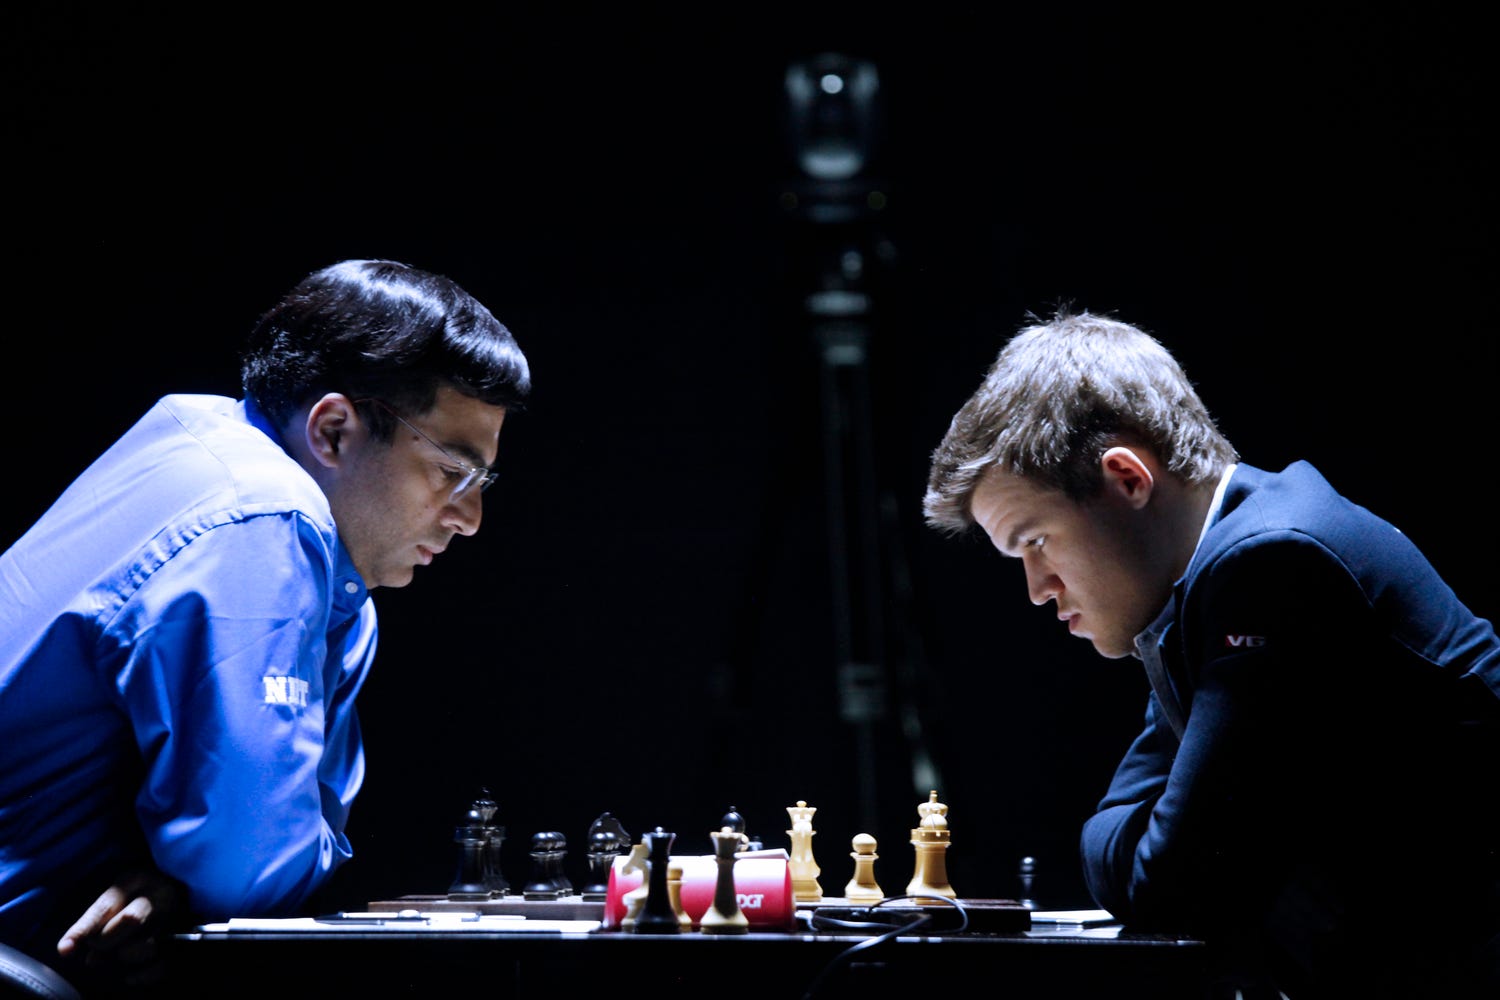 6 Ways To Beat Magnus Carlsen 